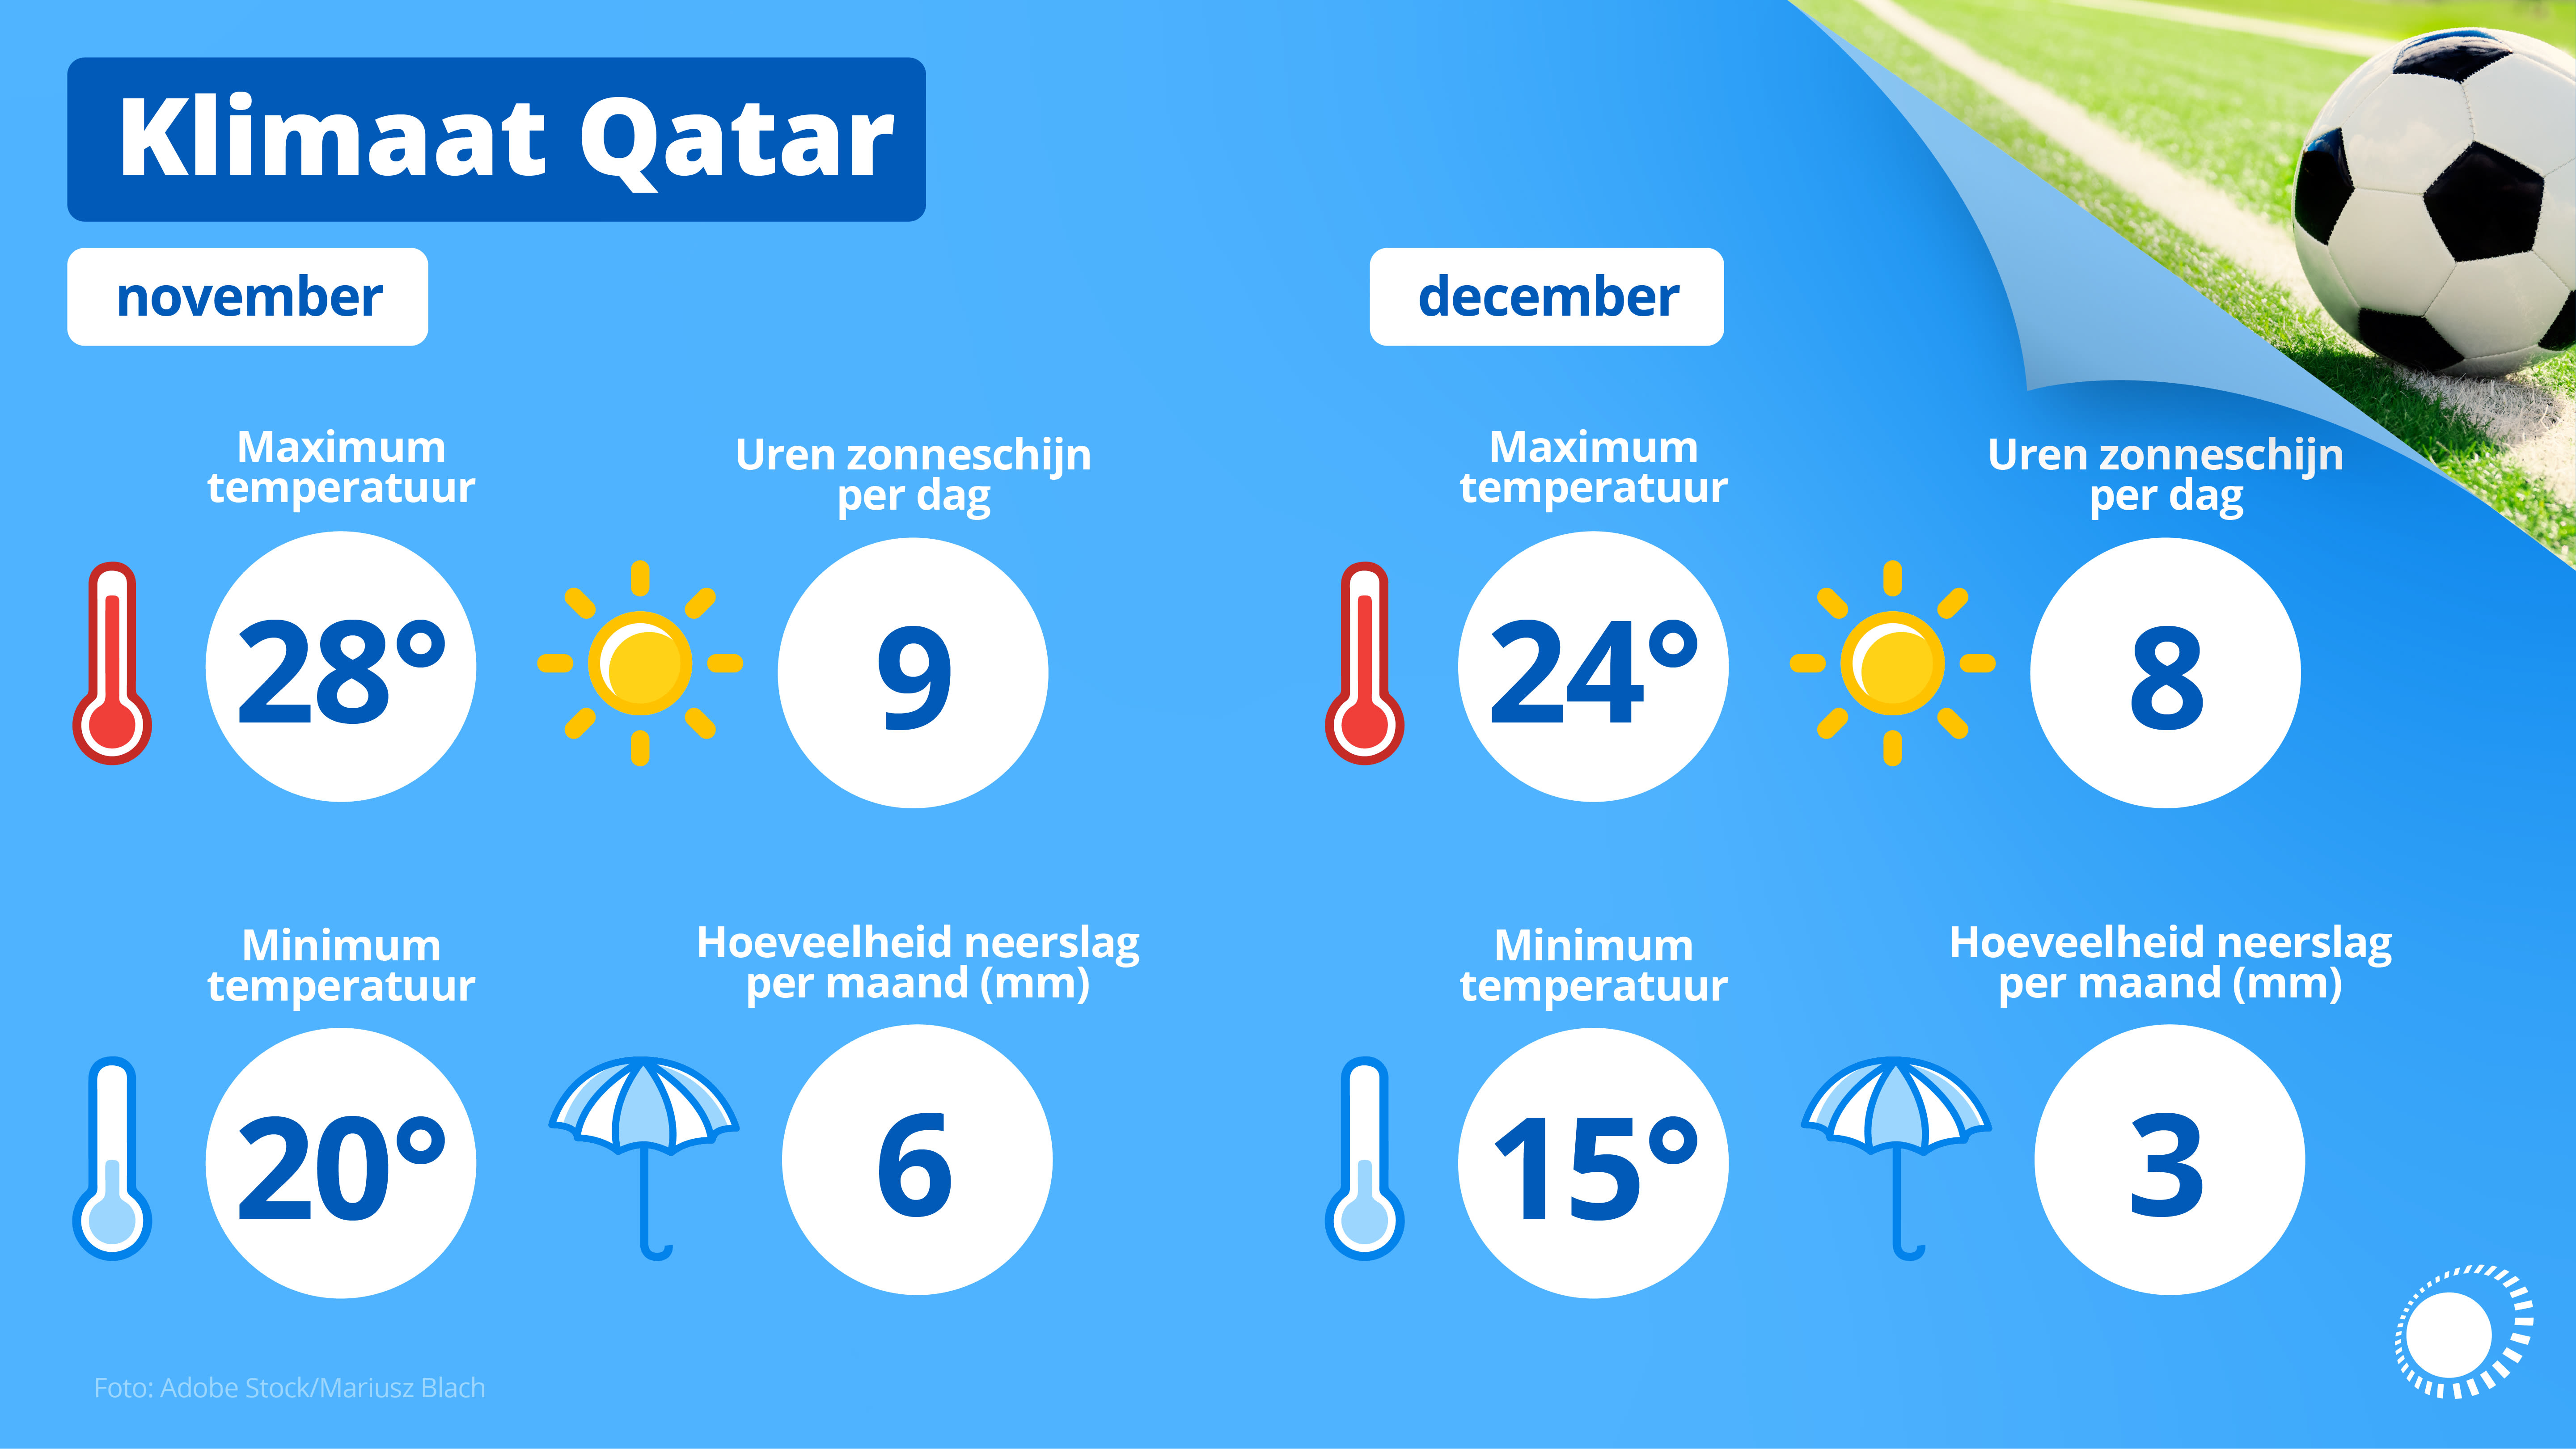 Het klimaat in november en december van Qatar.